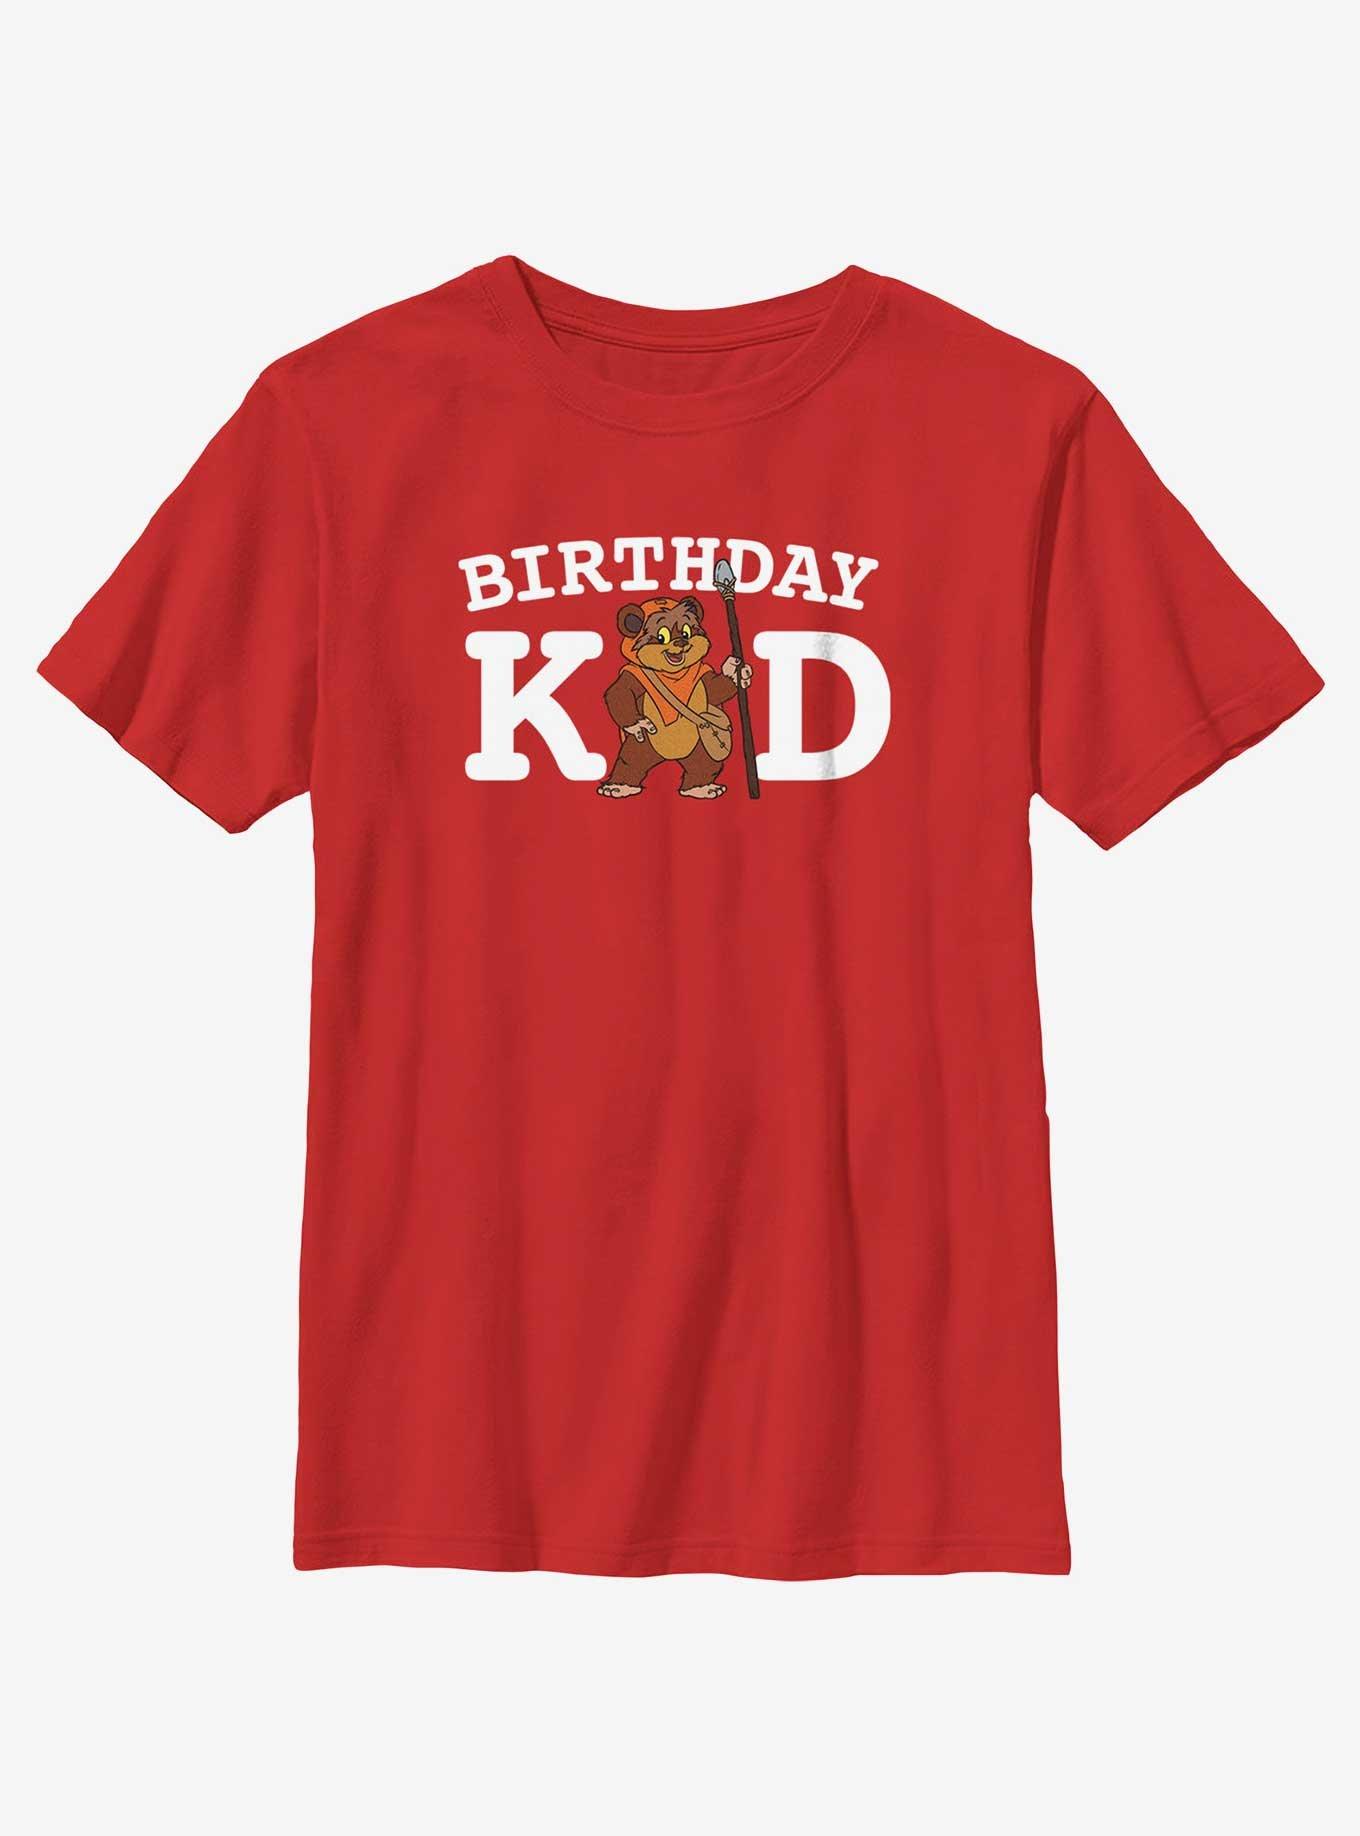 Star Wars Birhtday Kid Ewok Youth T-Shirt, RED, hi-res